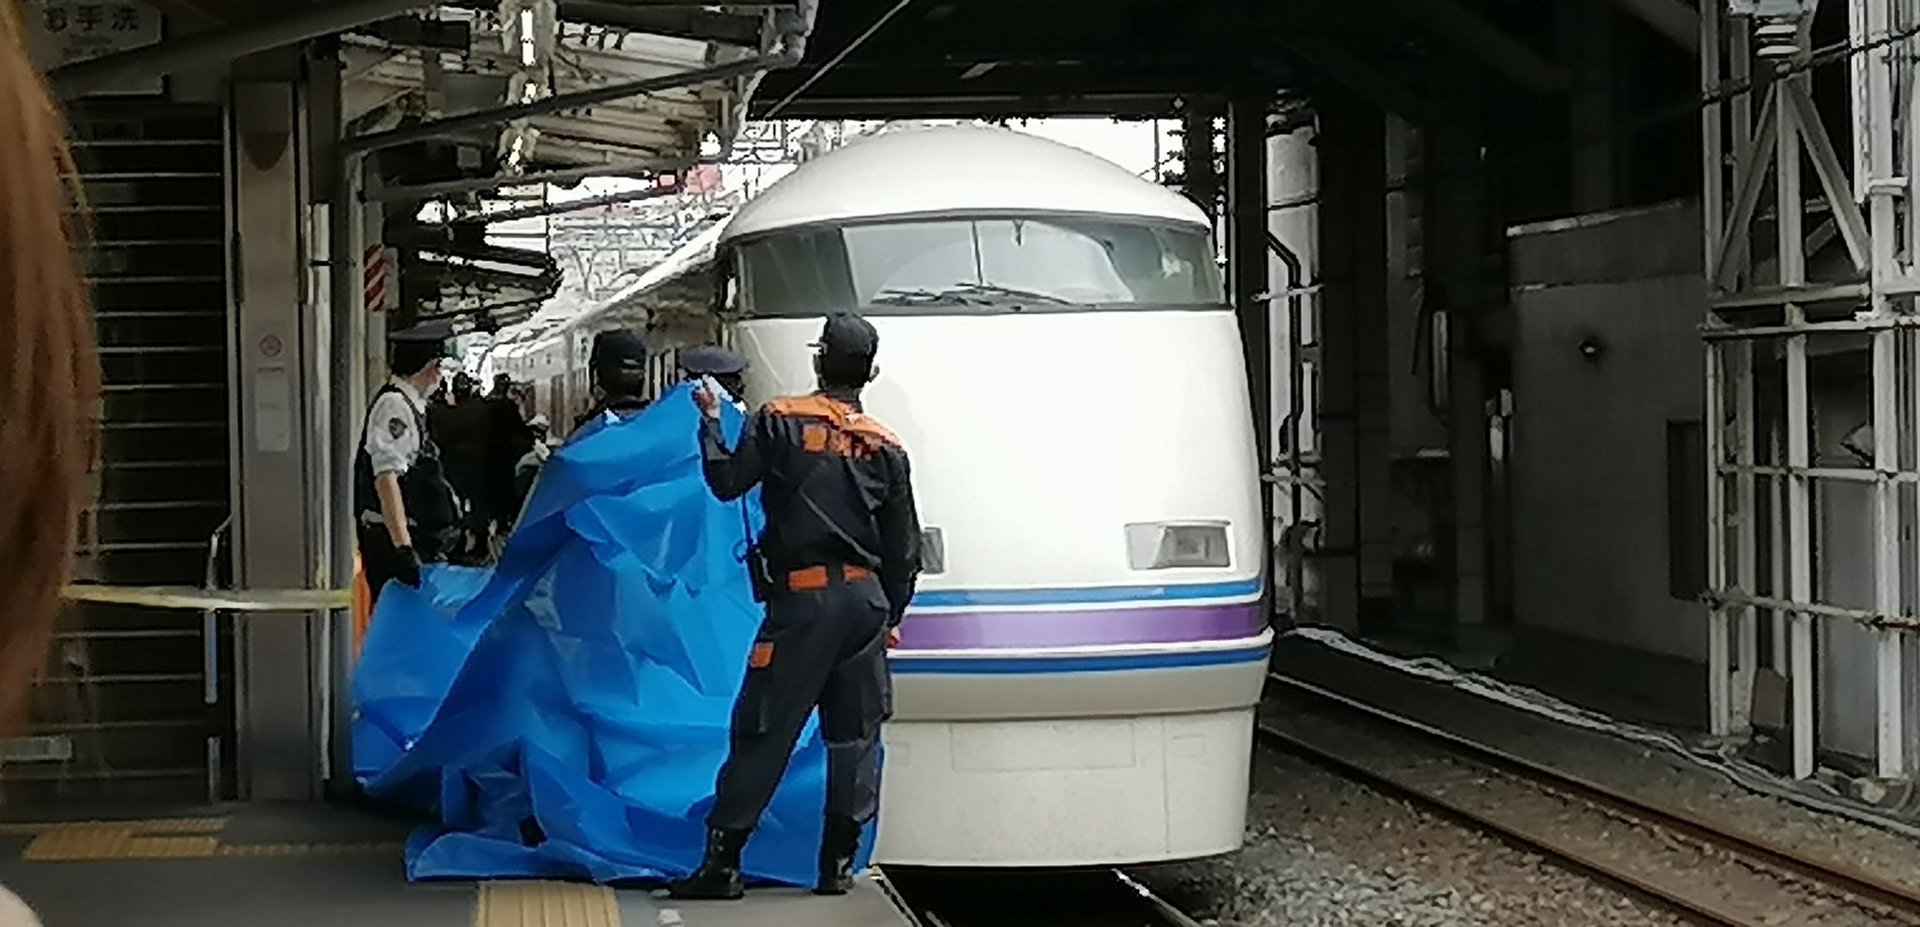 東武スカイツリーライン 西新井駅で人身事故 ホームに泣いてる女の人 飛び込み自殺の可能性 忍者猫 ブログ